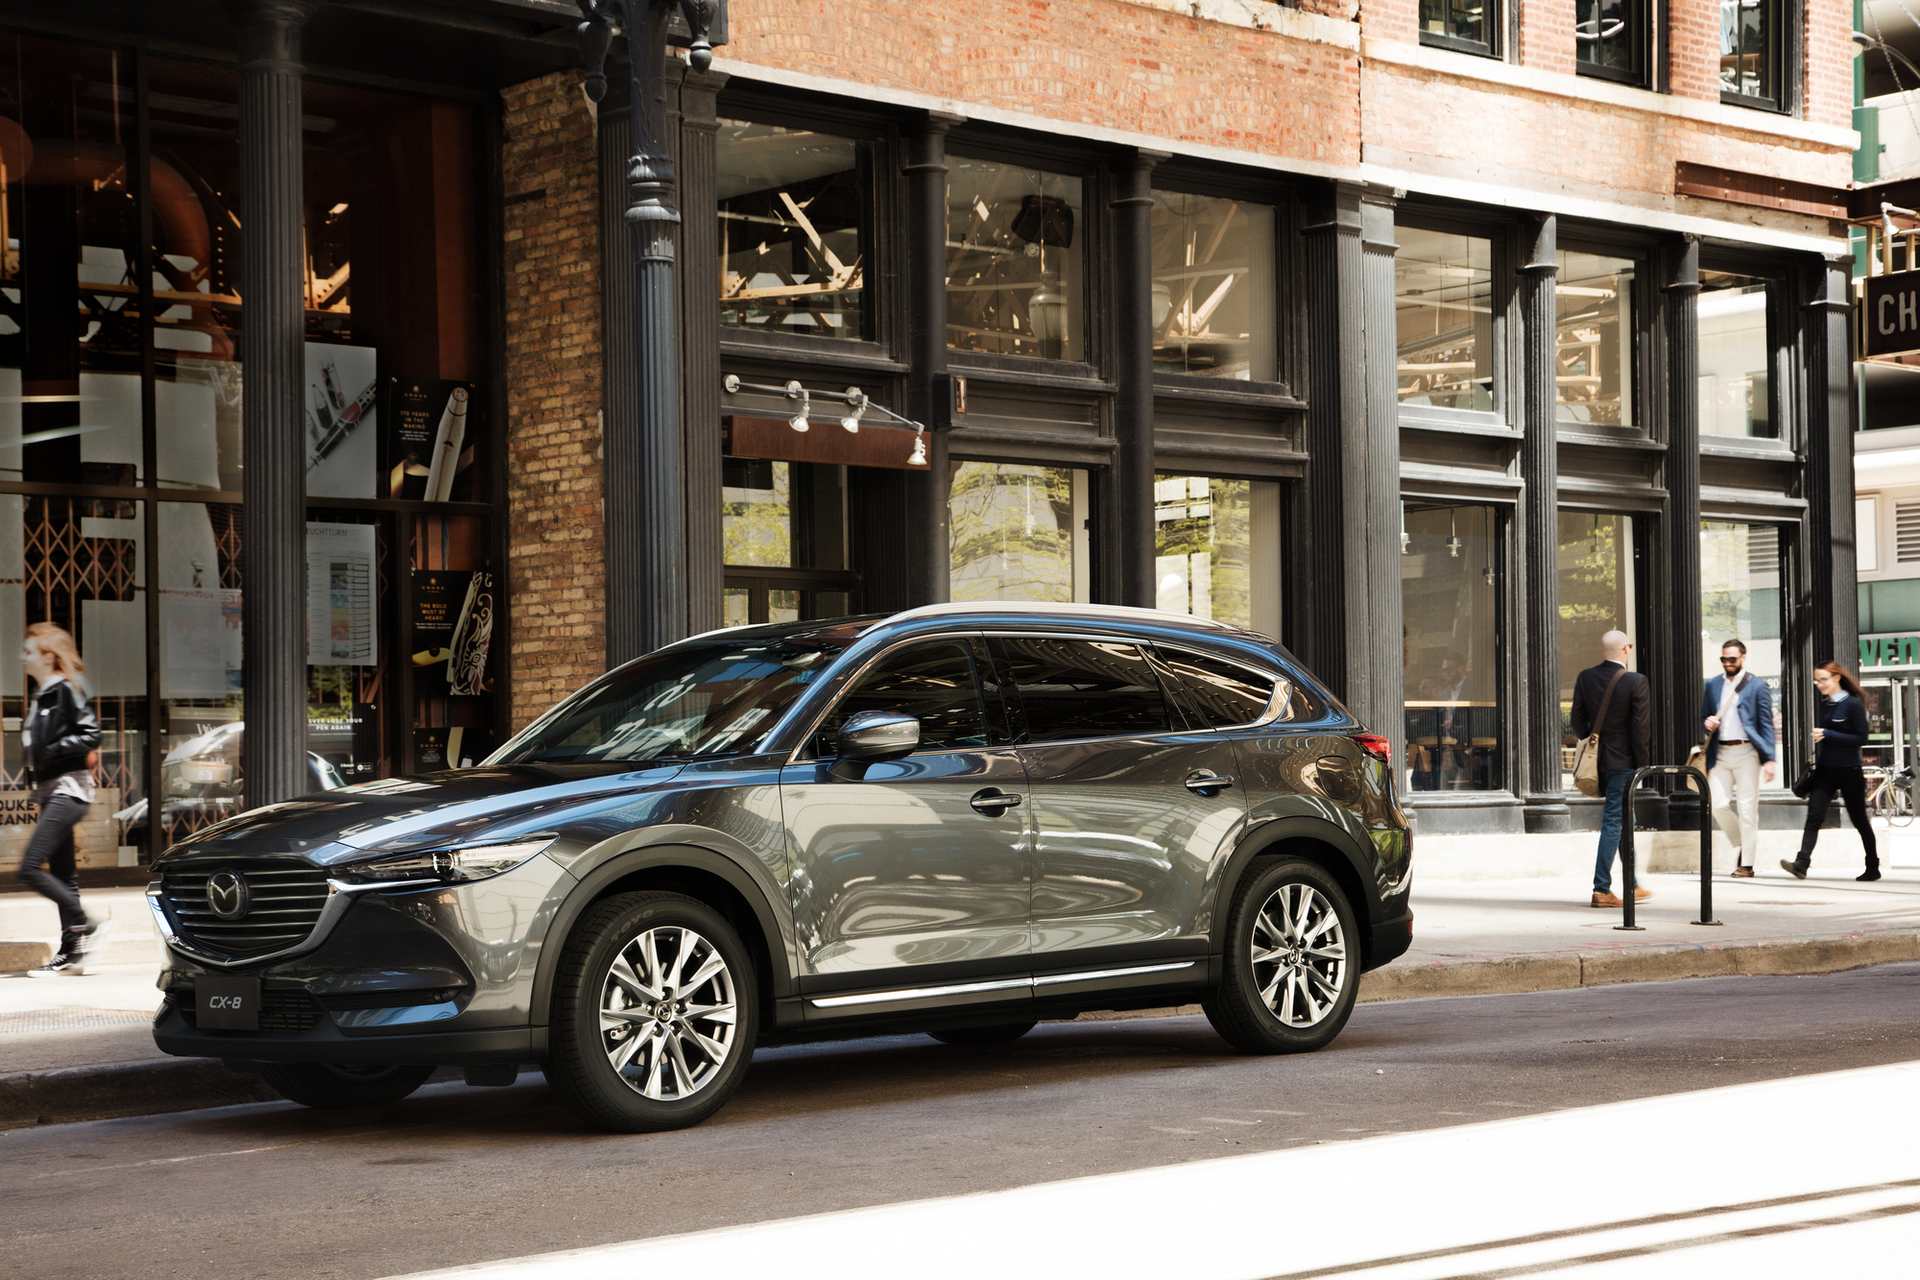 Mazda CX-8 ưu đãi 100% lệ phí trước bạ, mẫu SUV 7 chỗ giá “hời” nhất phân khúc - Ảnh 1.